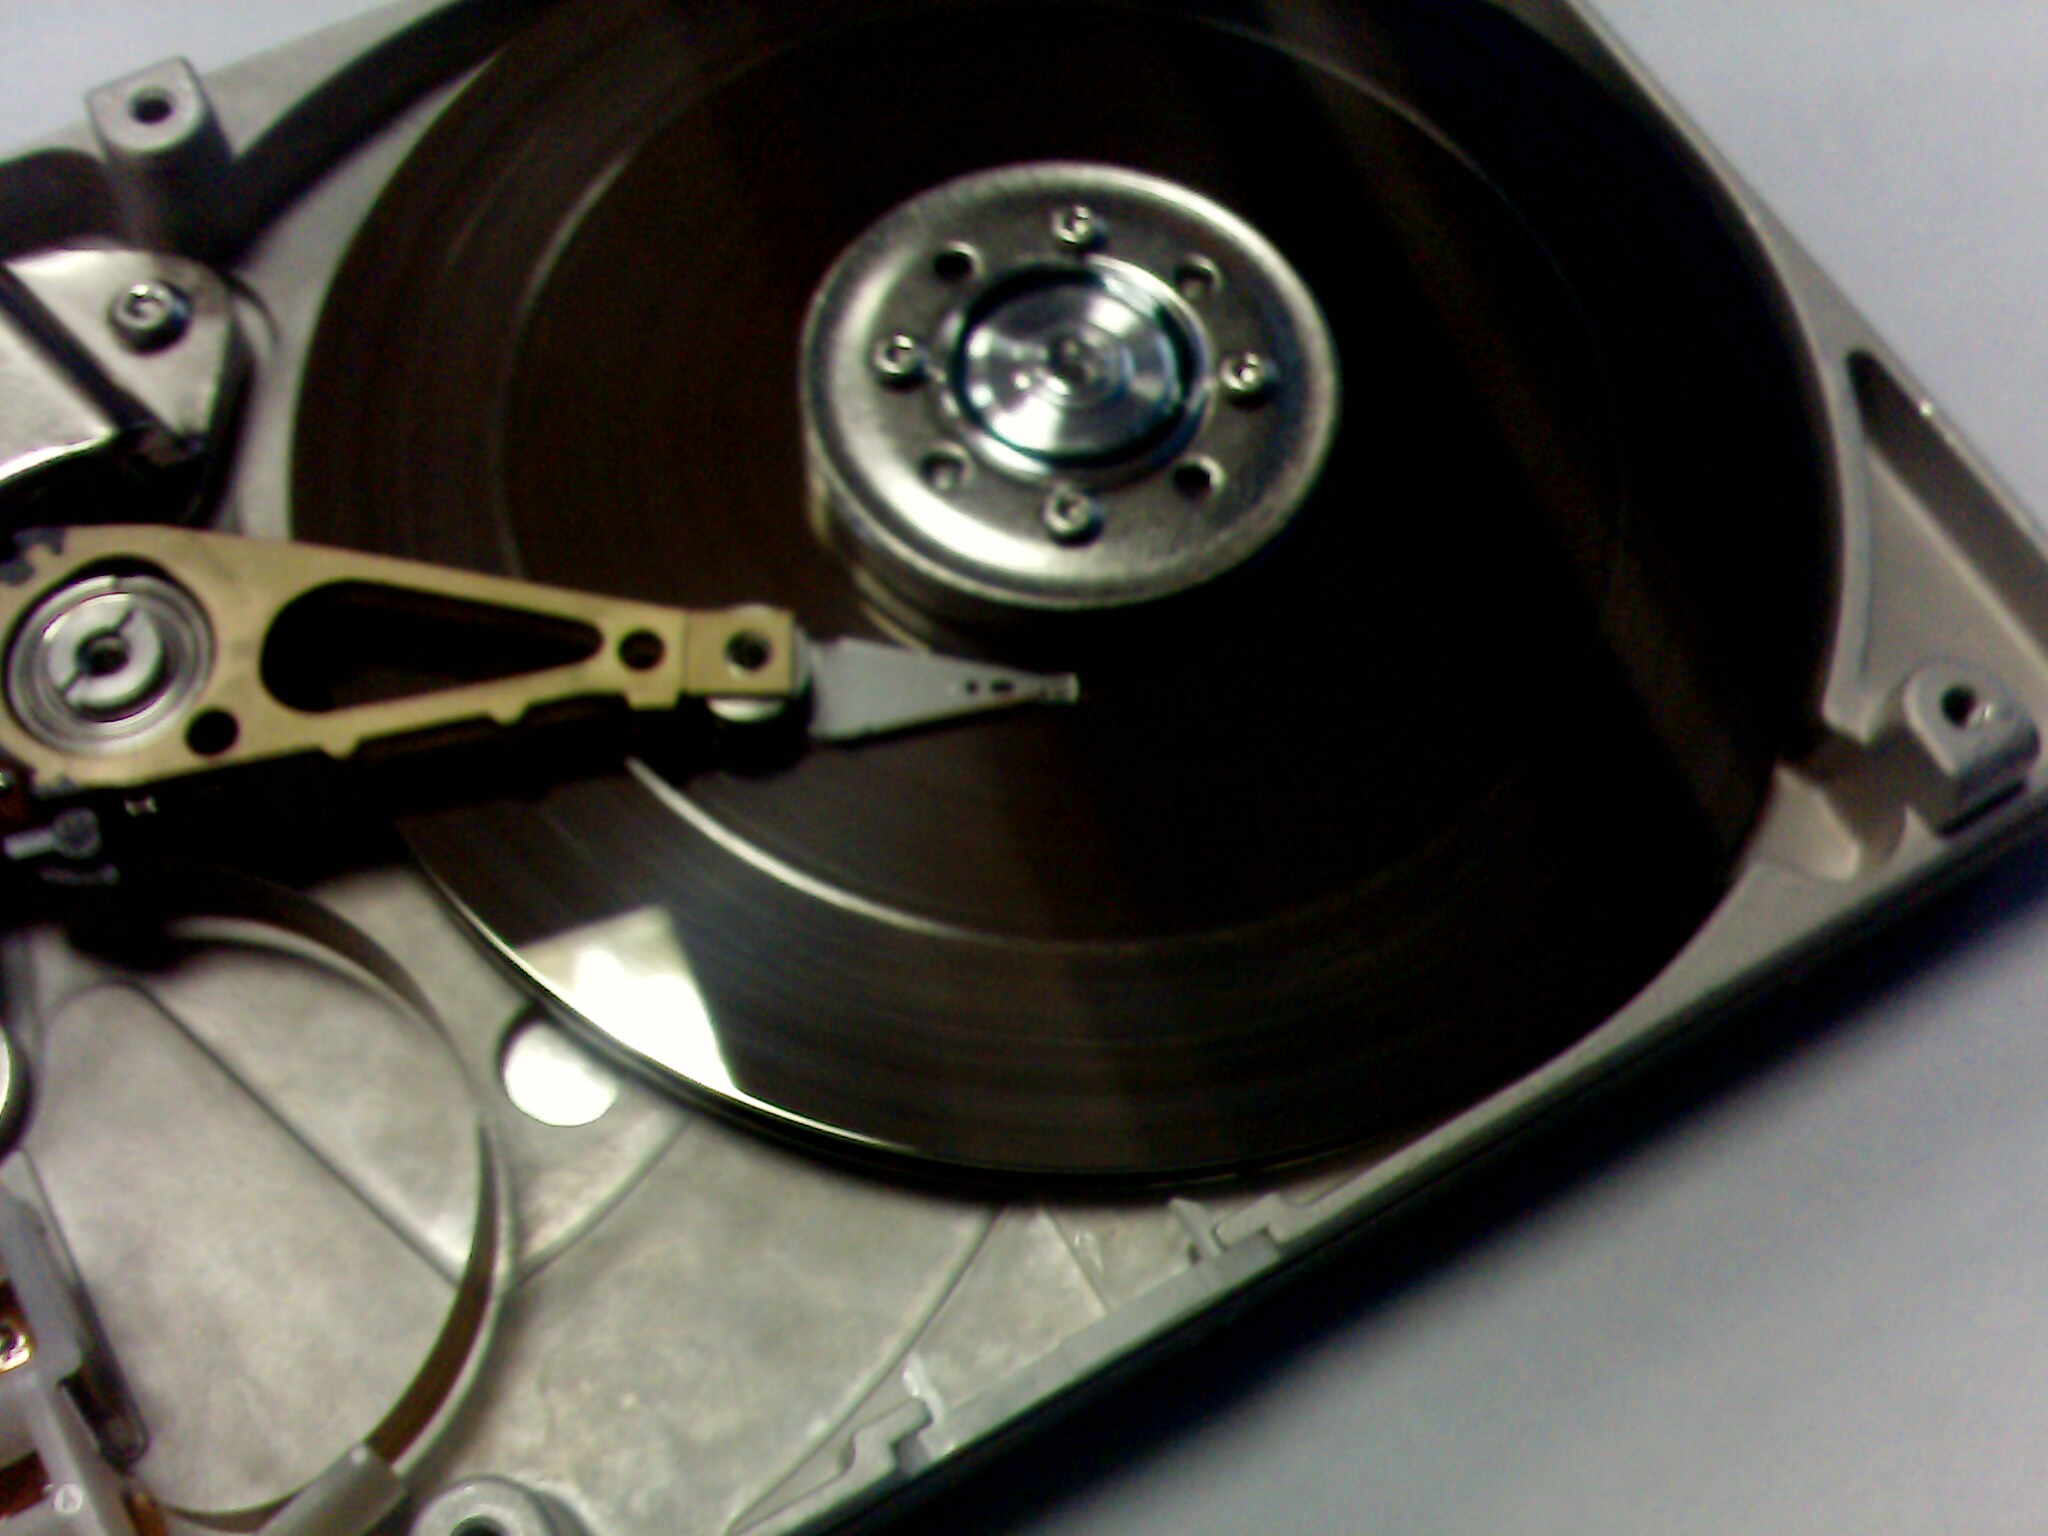 Разбитый диск. Сломанный жесткий диск. Распиленный жесткий диск. Разбитый HDD. Жесткий диск HDD сломан.